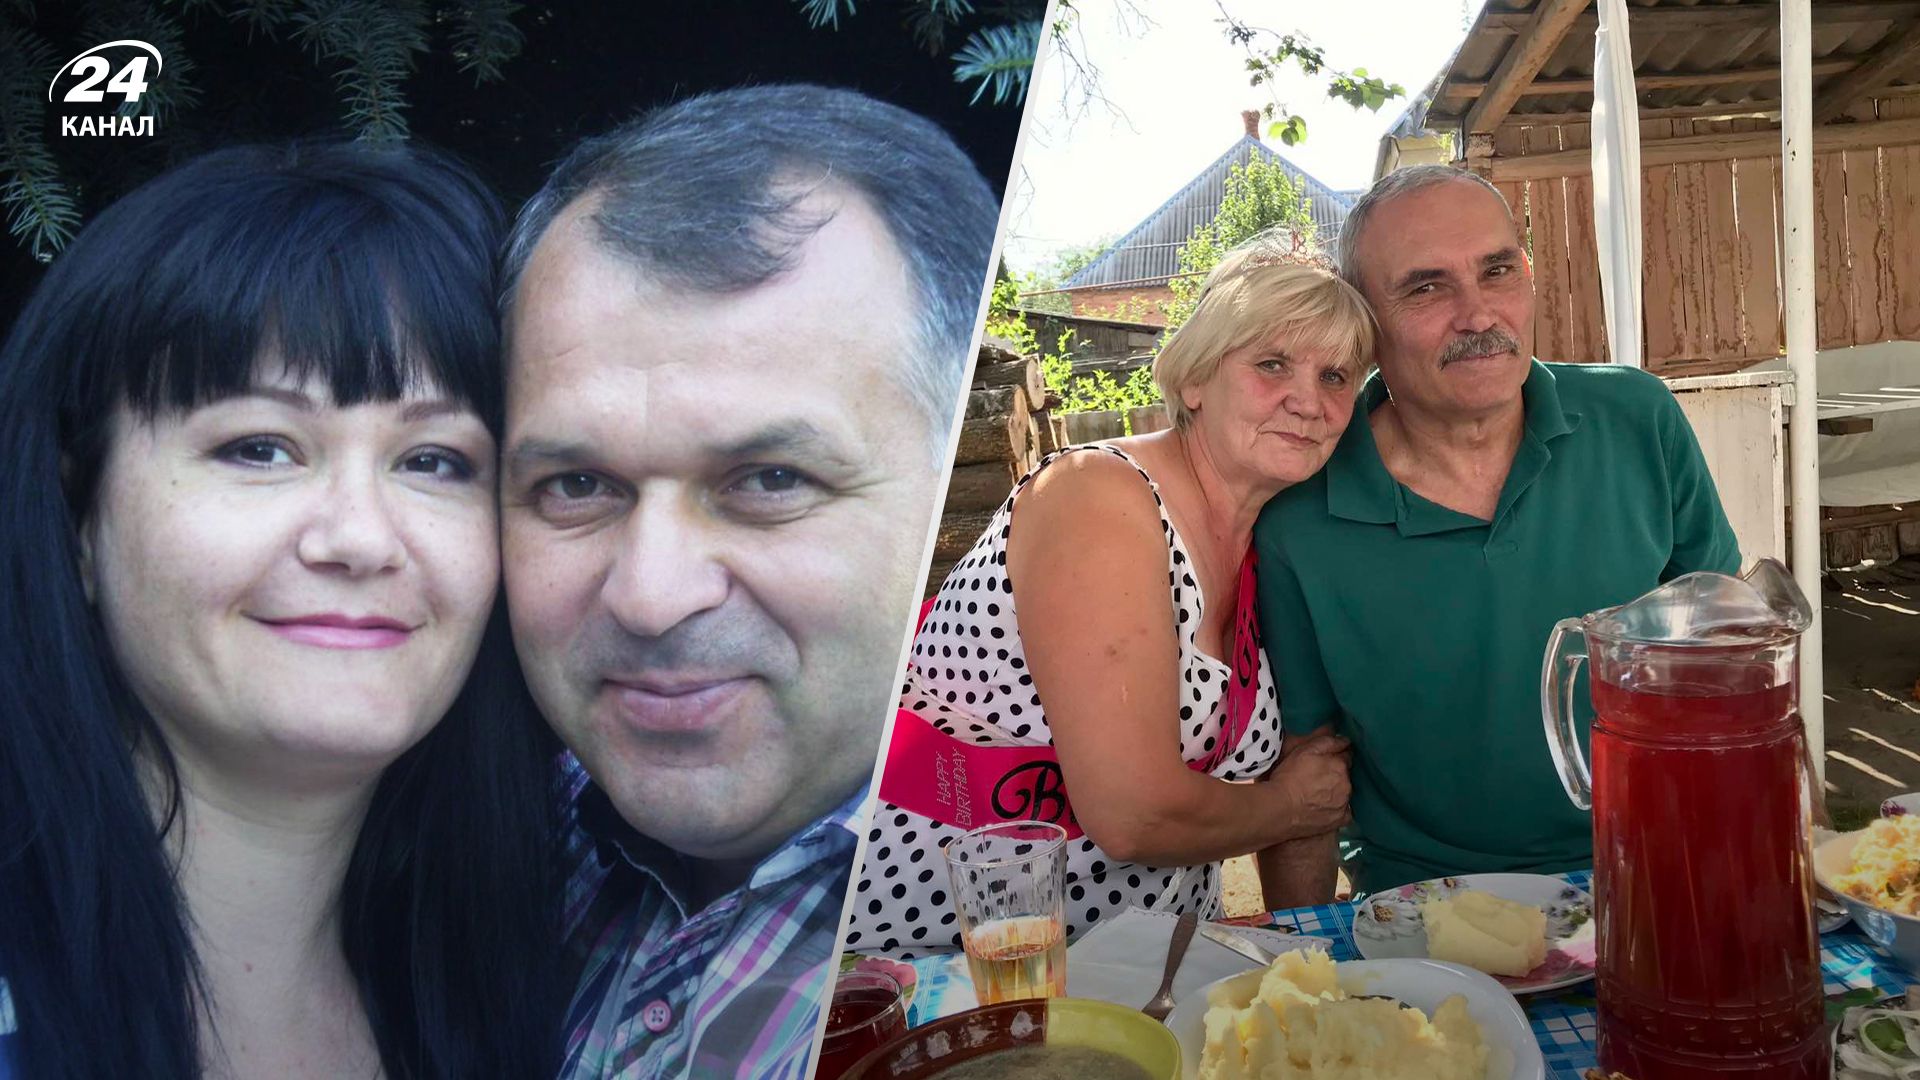 Истории двух супружеских пар, погибших в один день из-за российской агрессии - 24 Канал